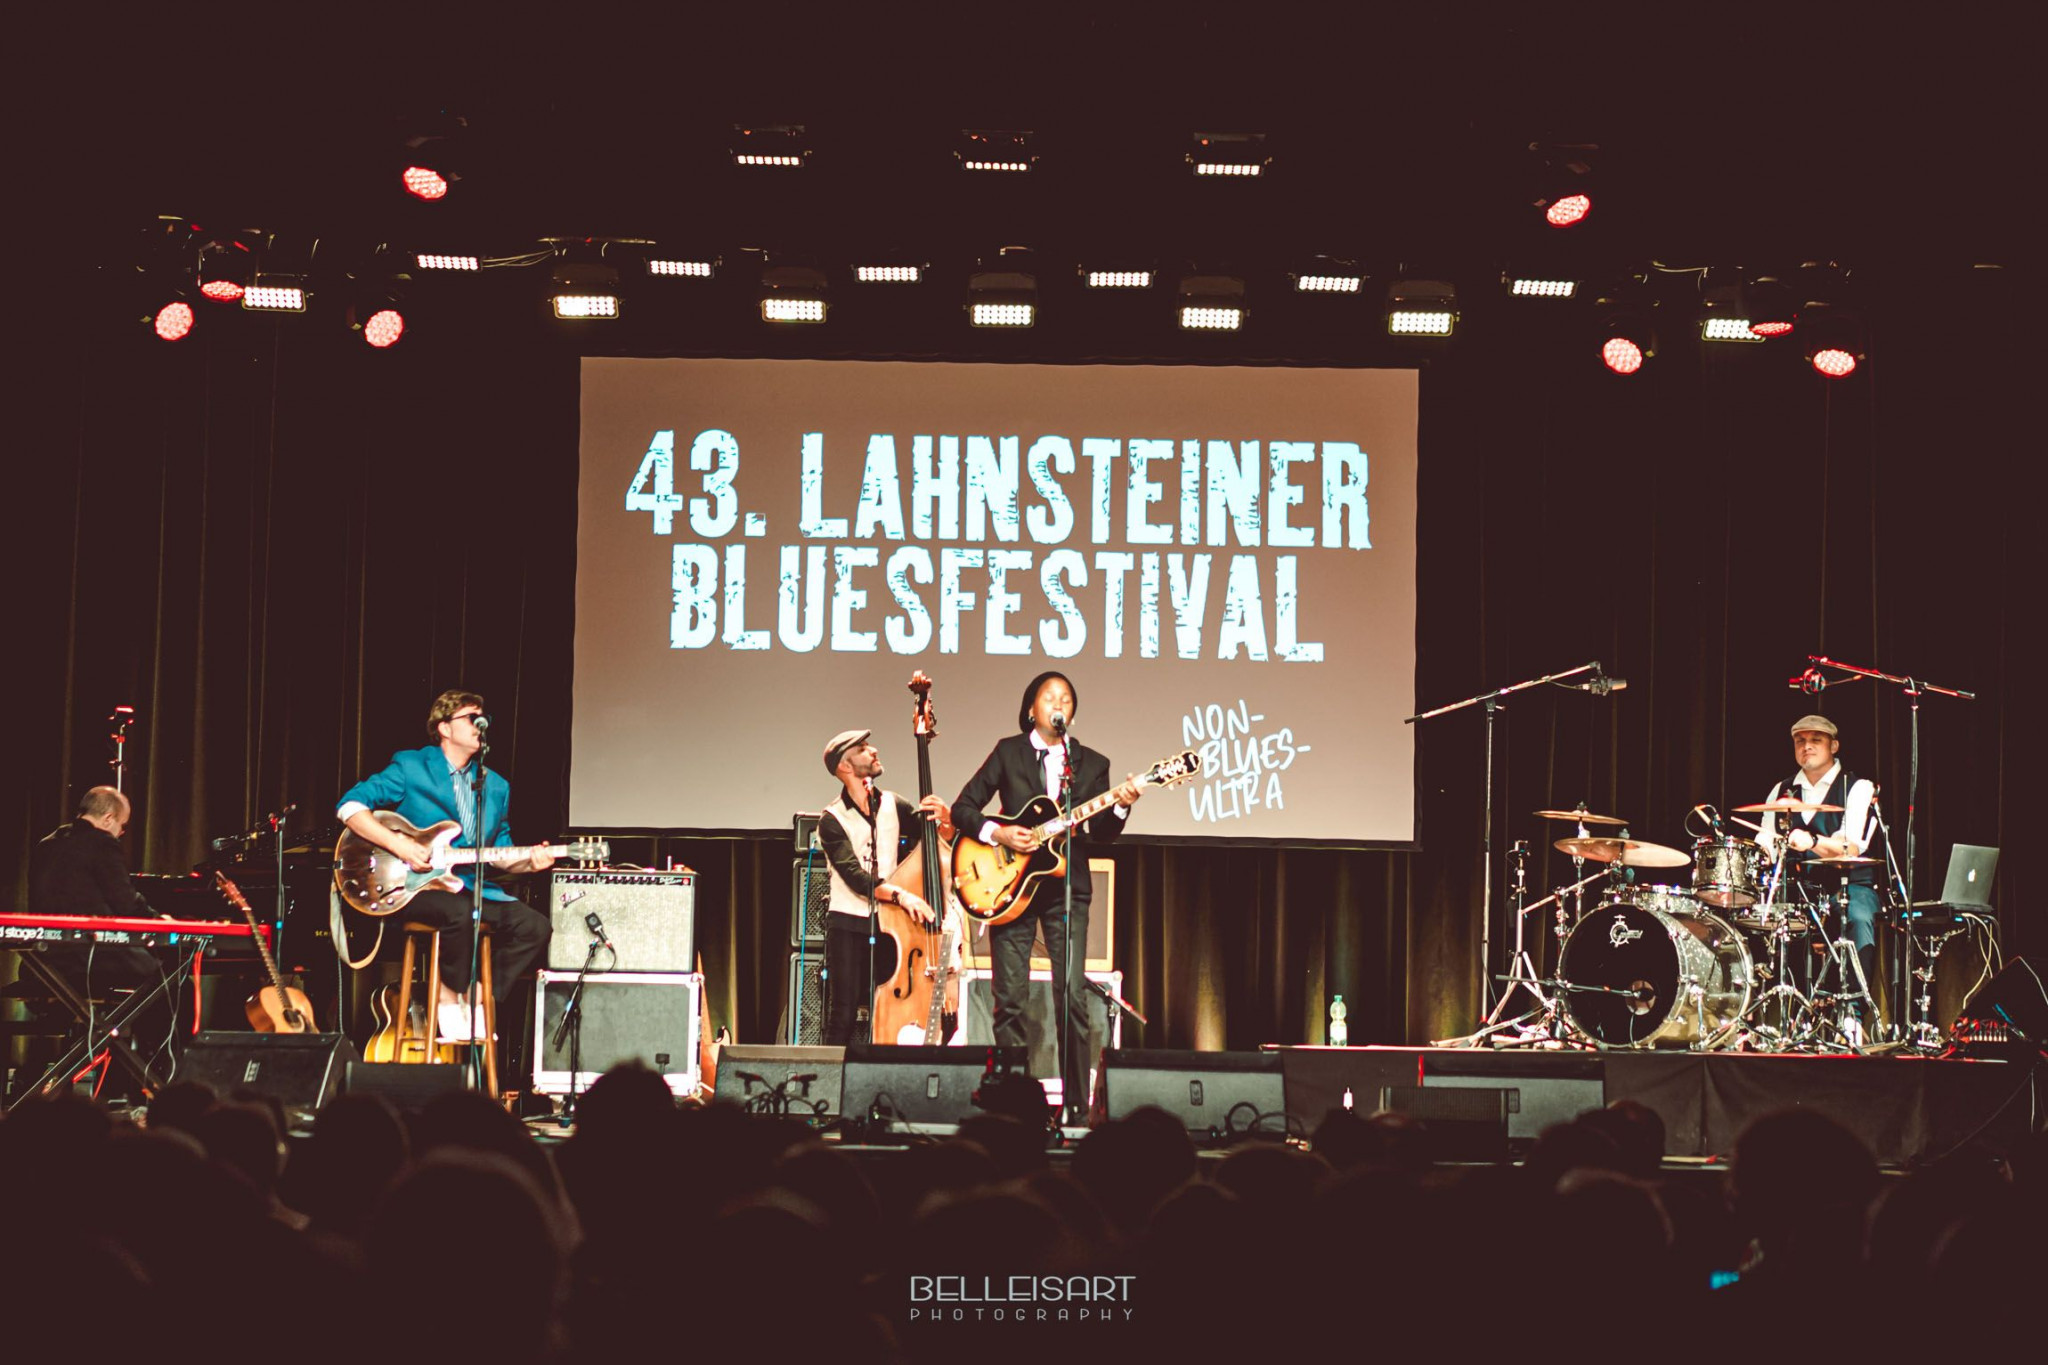 44. Lahnsteiner Bluesfestival, 44. Lahnsteiner Bluesfestival